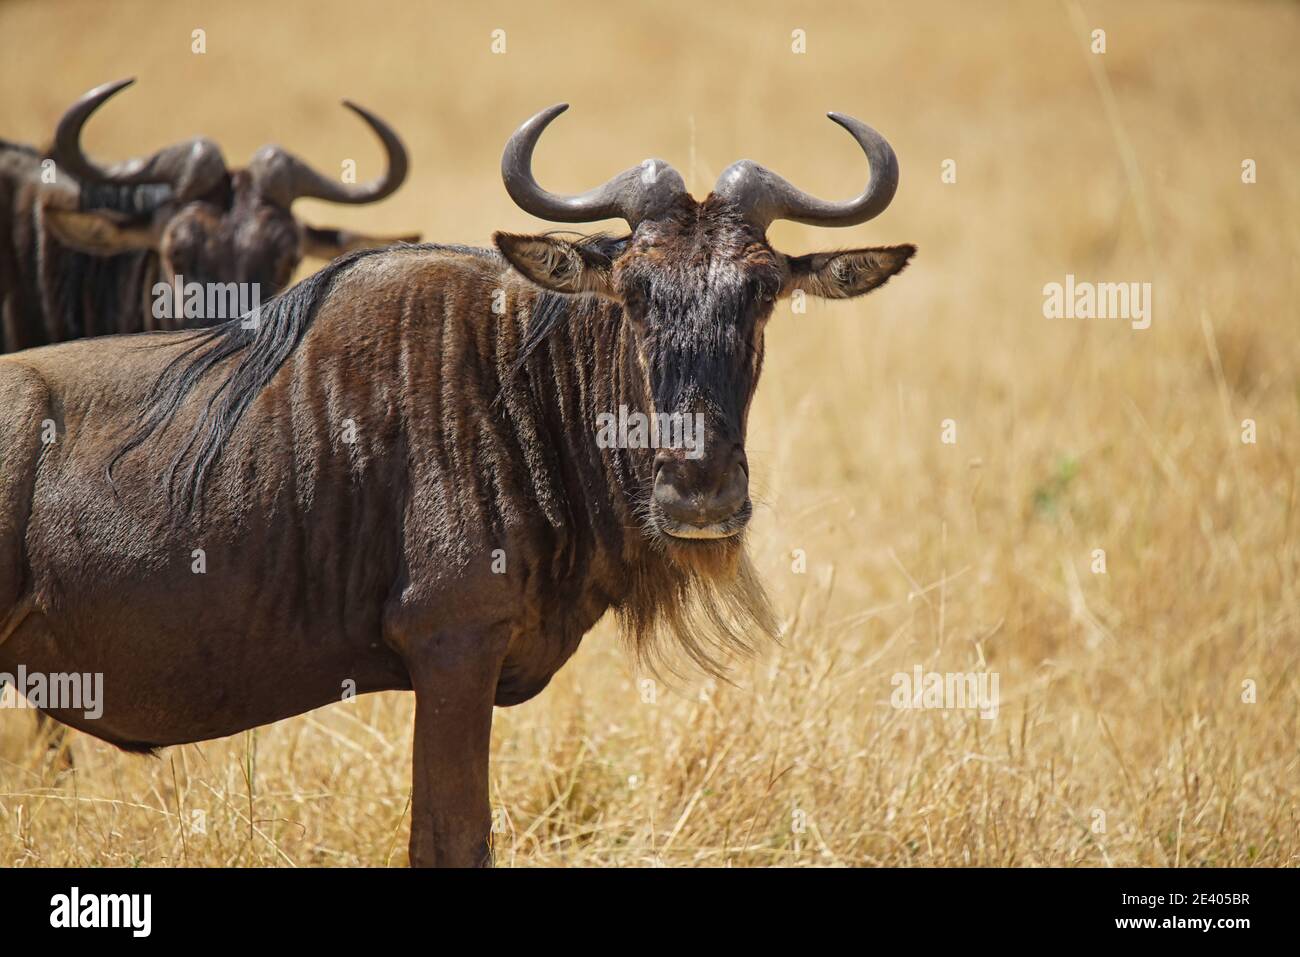 L'antilope (Wildebeest) se tient sur l'herbe sèche et regarde la caméra. Un grand nombre d'animaux migrent vers la réserve naturelle nationale de Masai Mara Banque D'Images